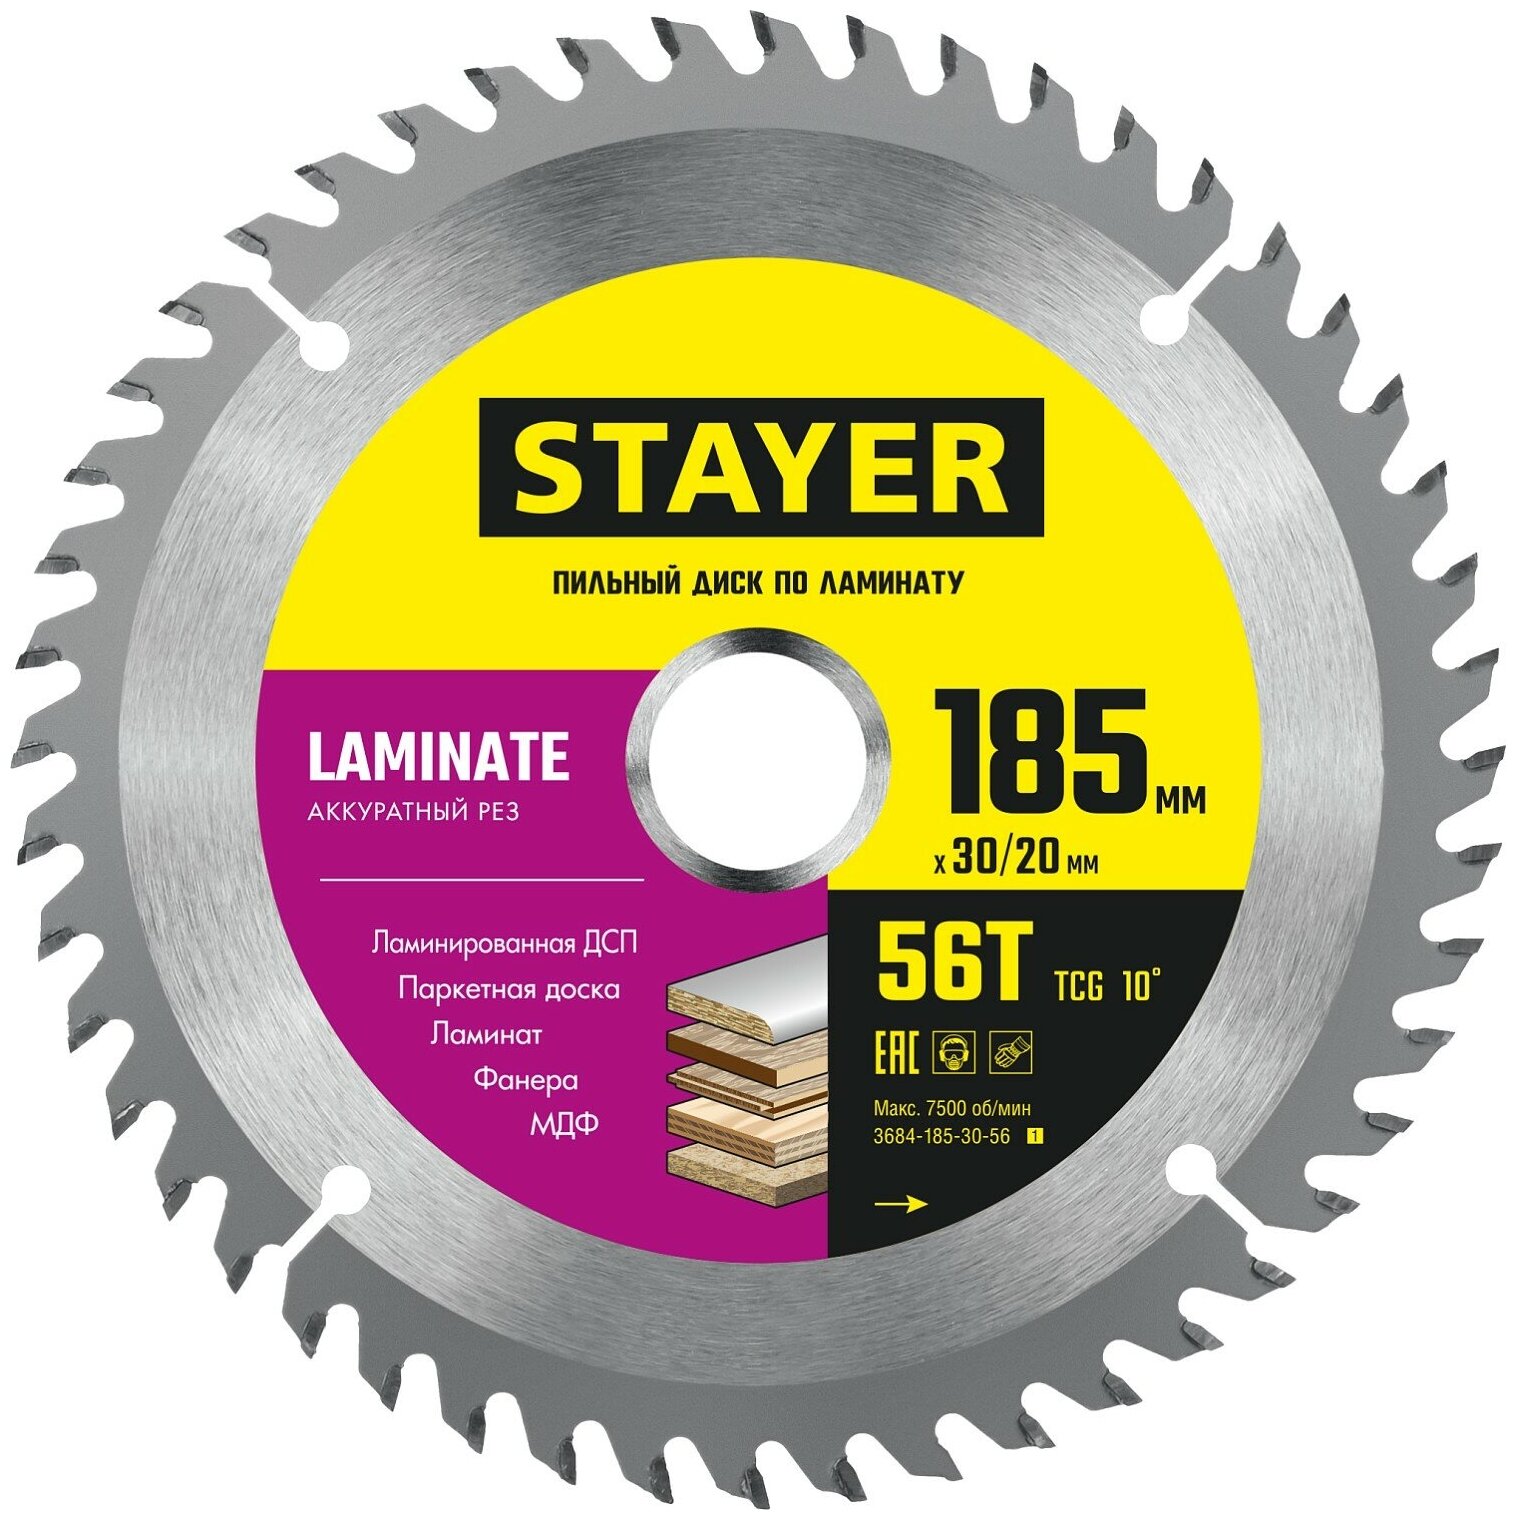 STAYER LAMINATE 185 x 30/20мм 56T диск пильный по ламинату аккуратный рез 3684-185-30-56